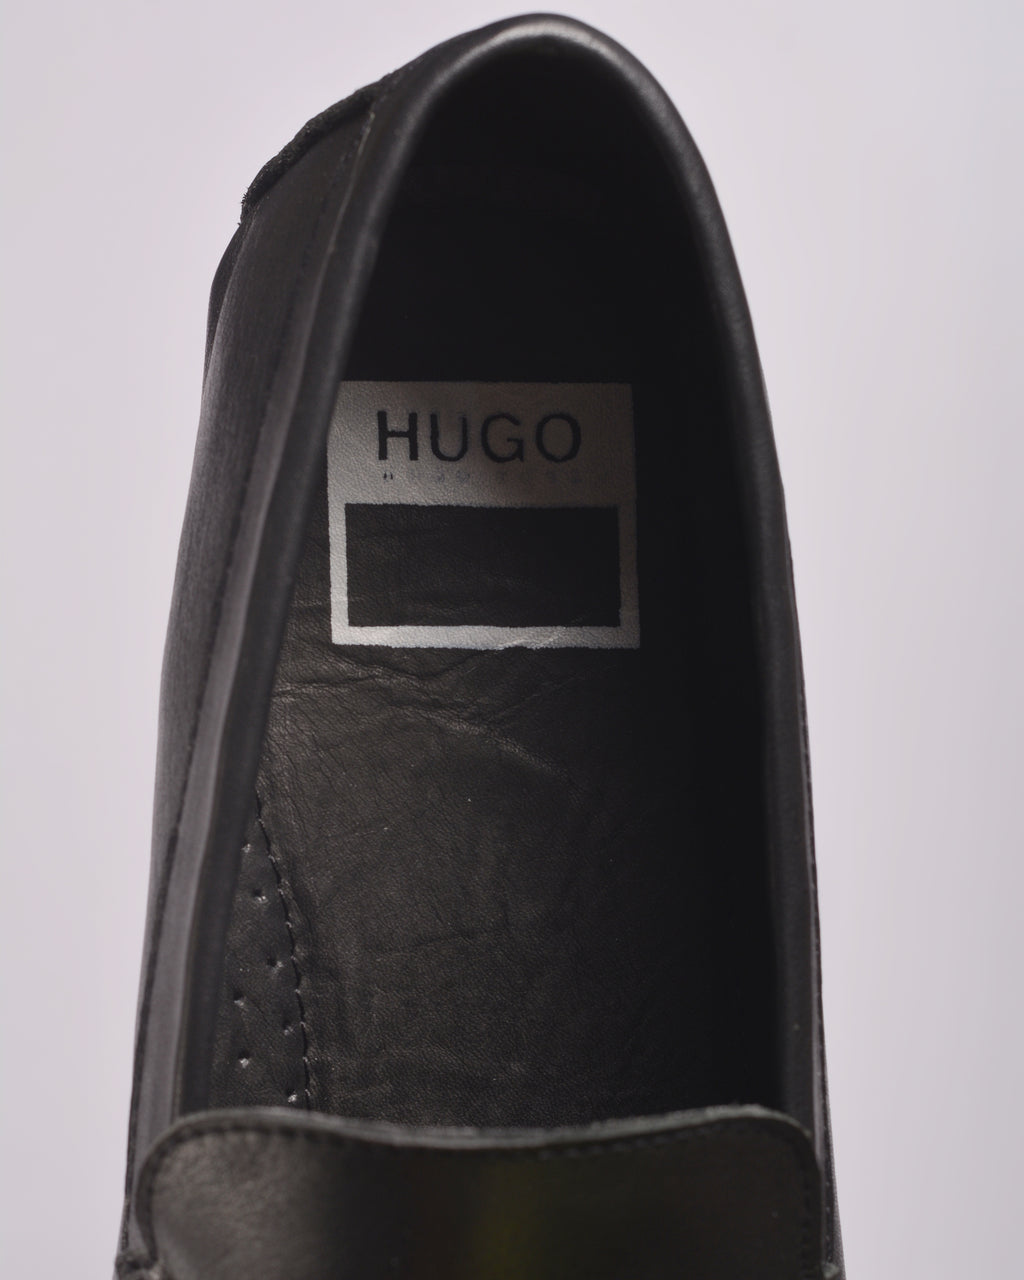 HUGO BOSS SUEDE SLIP-ON MOCCASINS BLACK